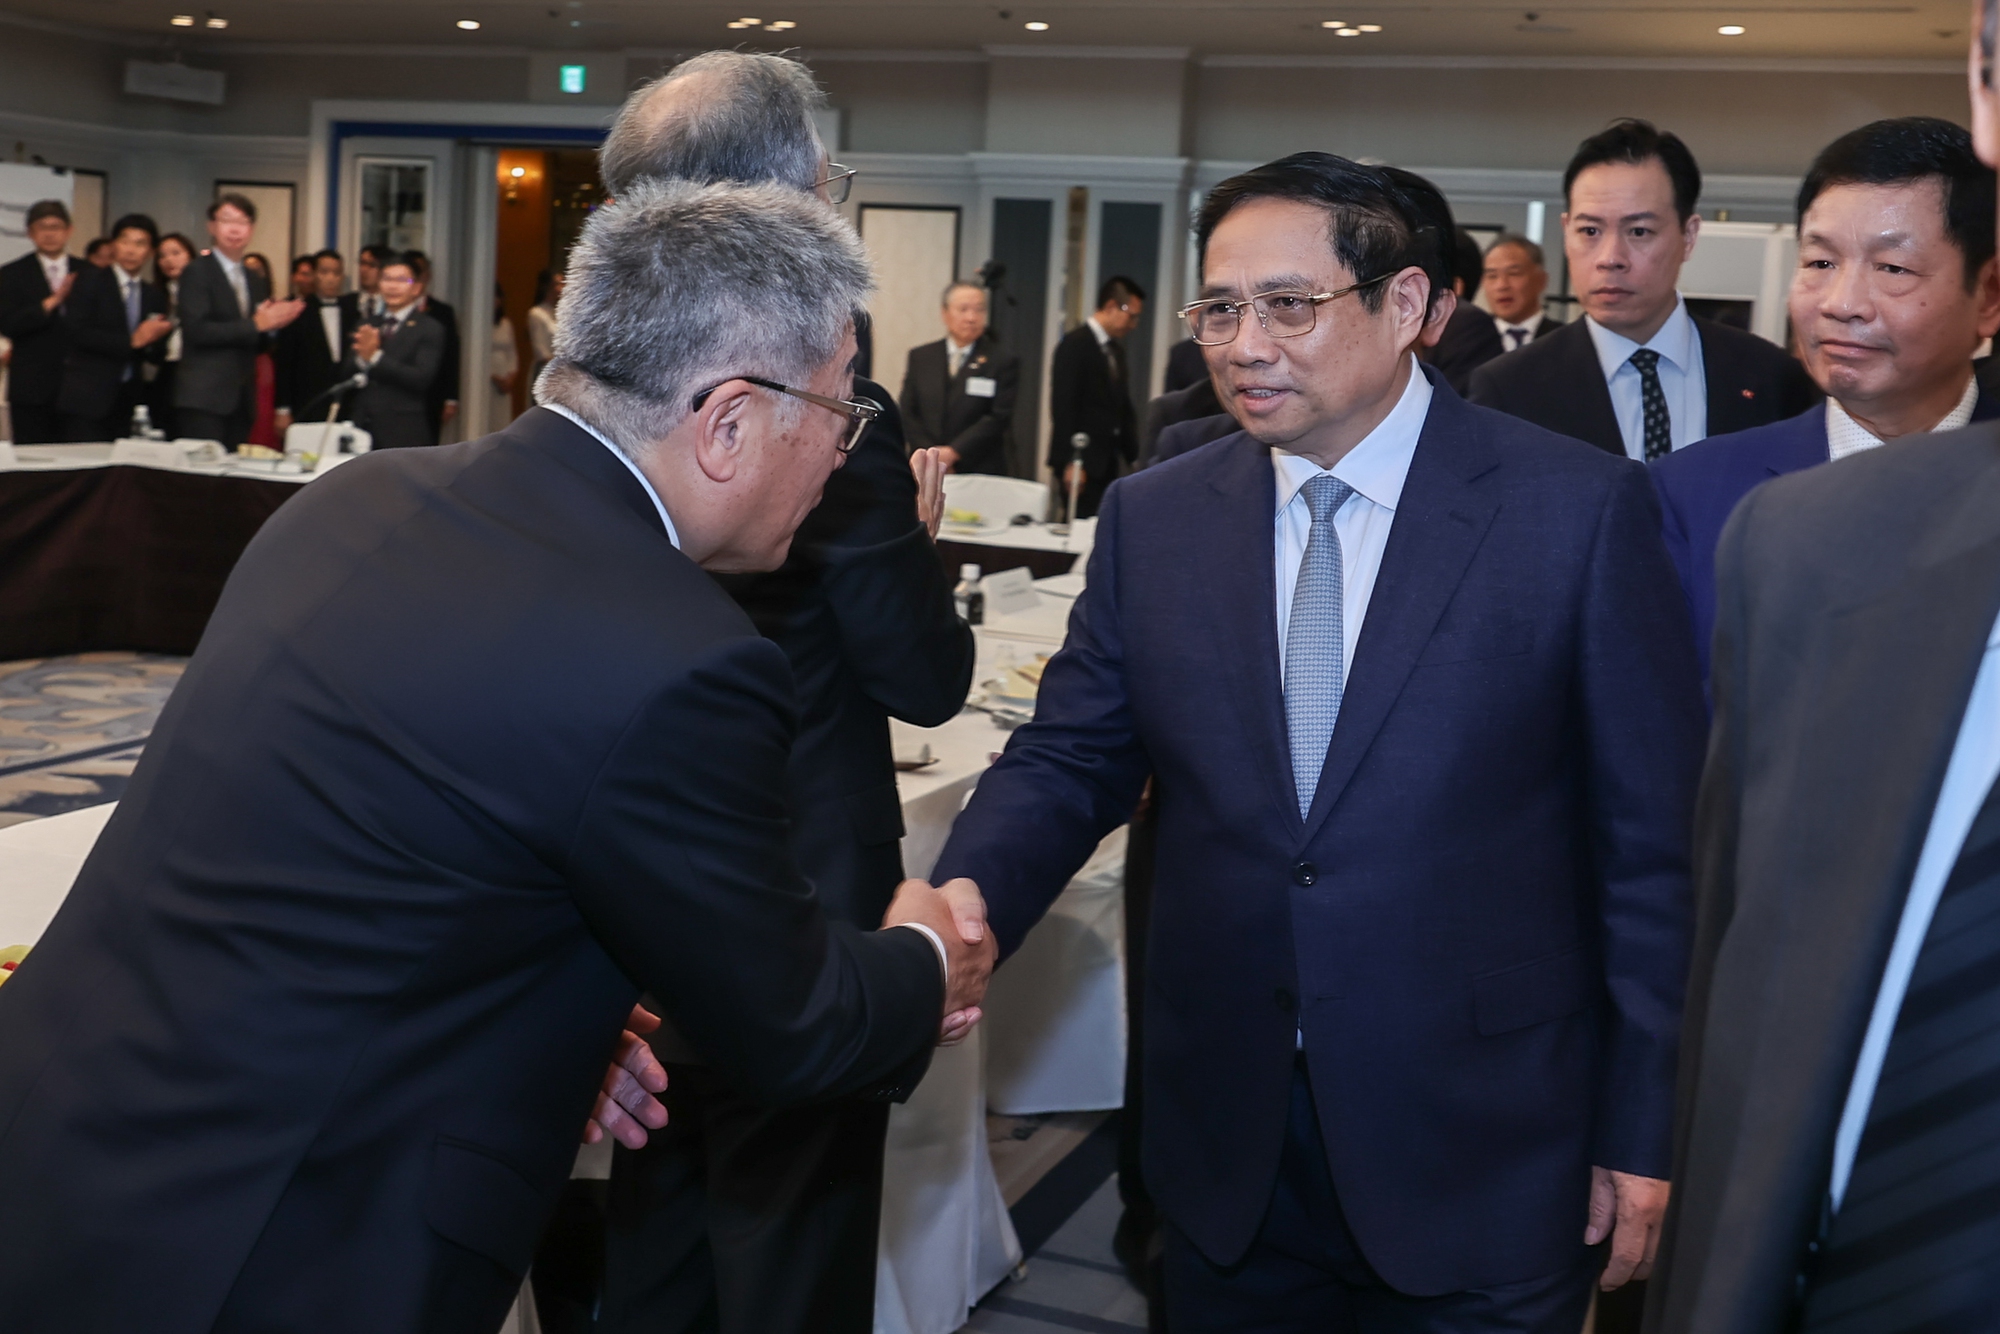 Thủ tướng Phạm Minh Chính gặp gỡ, làm việc với các tập đoàn, doanh nghiệp hàng đầu của Nhật Bản về hợp tác phát triển vi mạch bán dẫn và hệ sinh thái đi cùng - Ảnh: VGP/Nhật Bắc